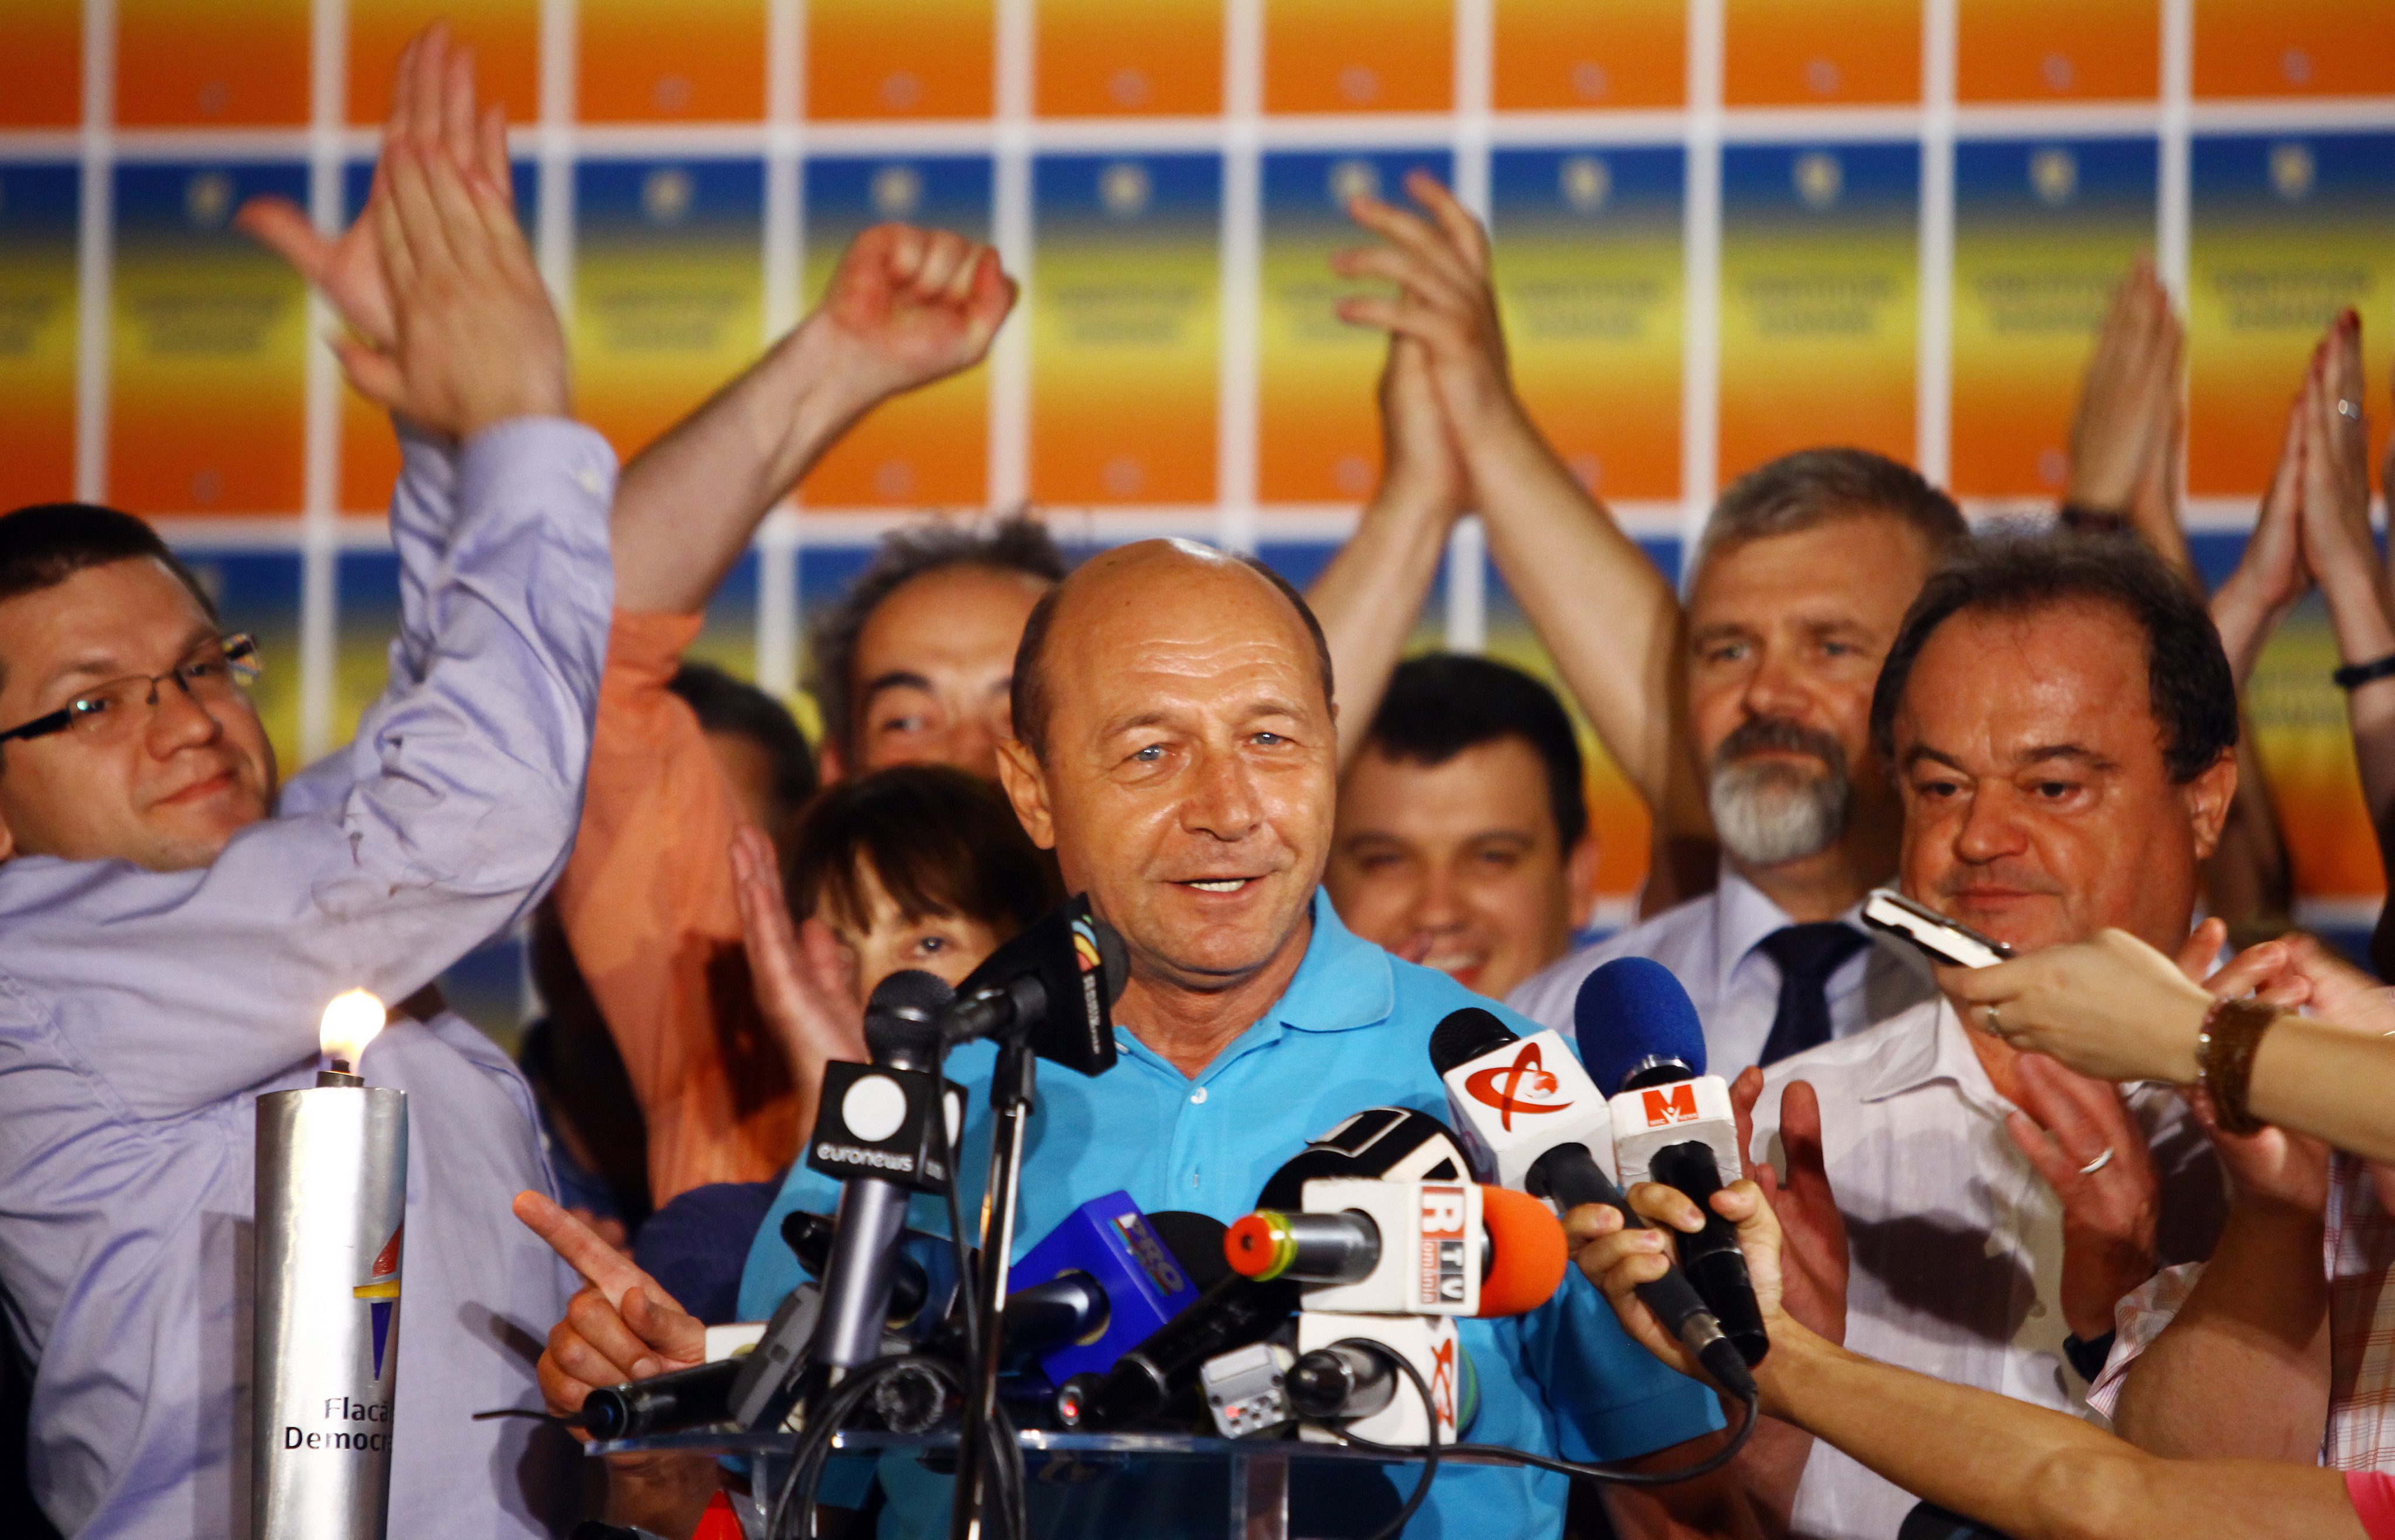 Траян Бъсеску се връща на поста си след референдума